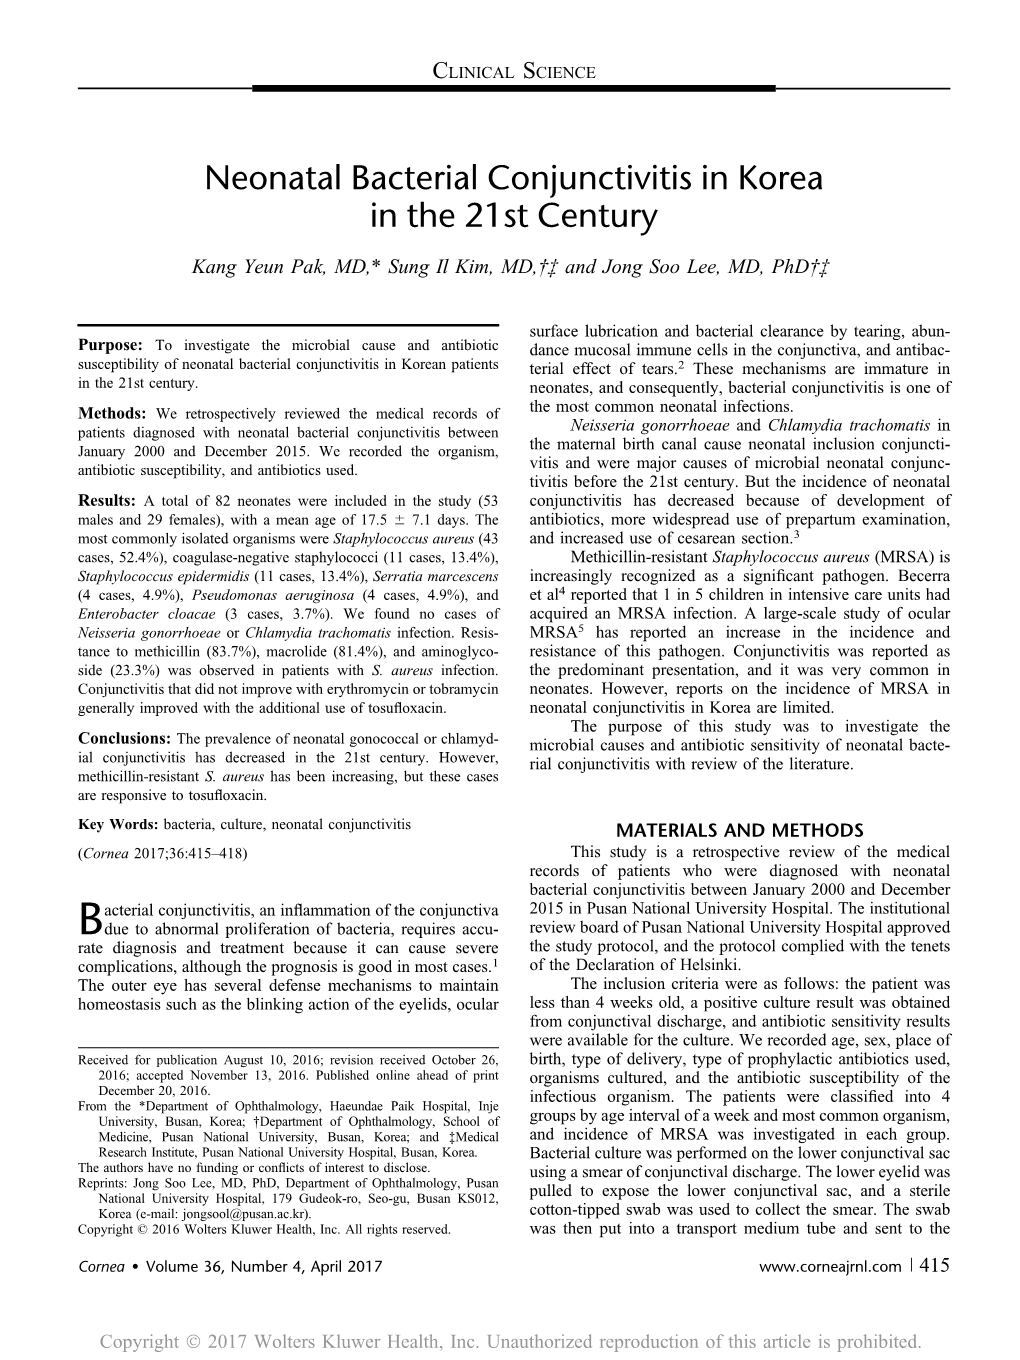 Neonatal Bacterial Conjunctivitis in Korea in the 21St Century